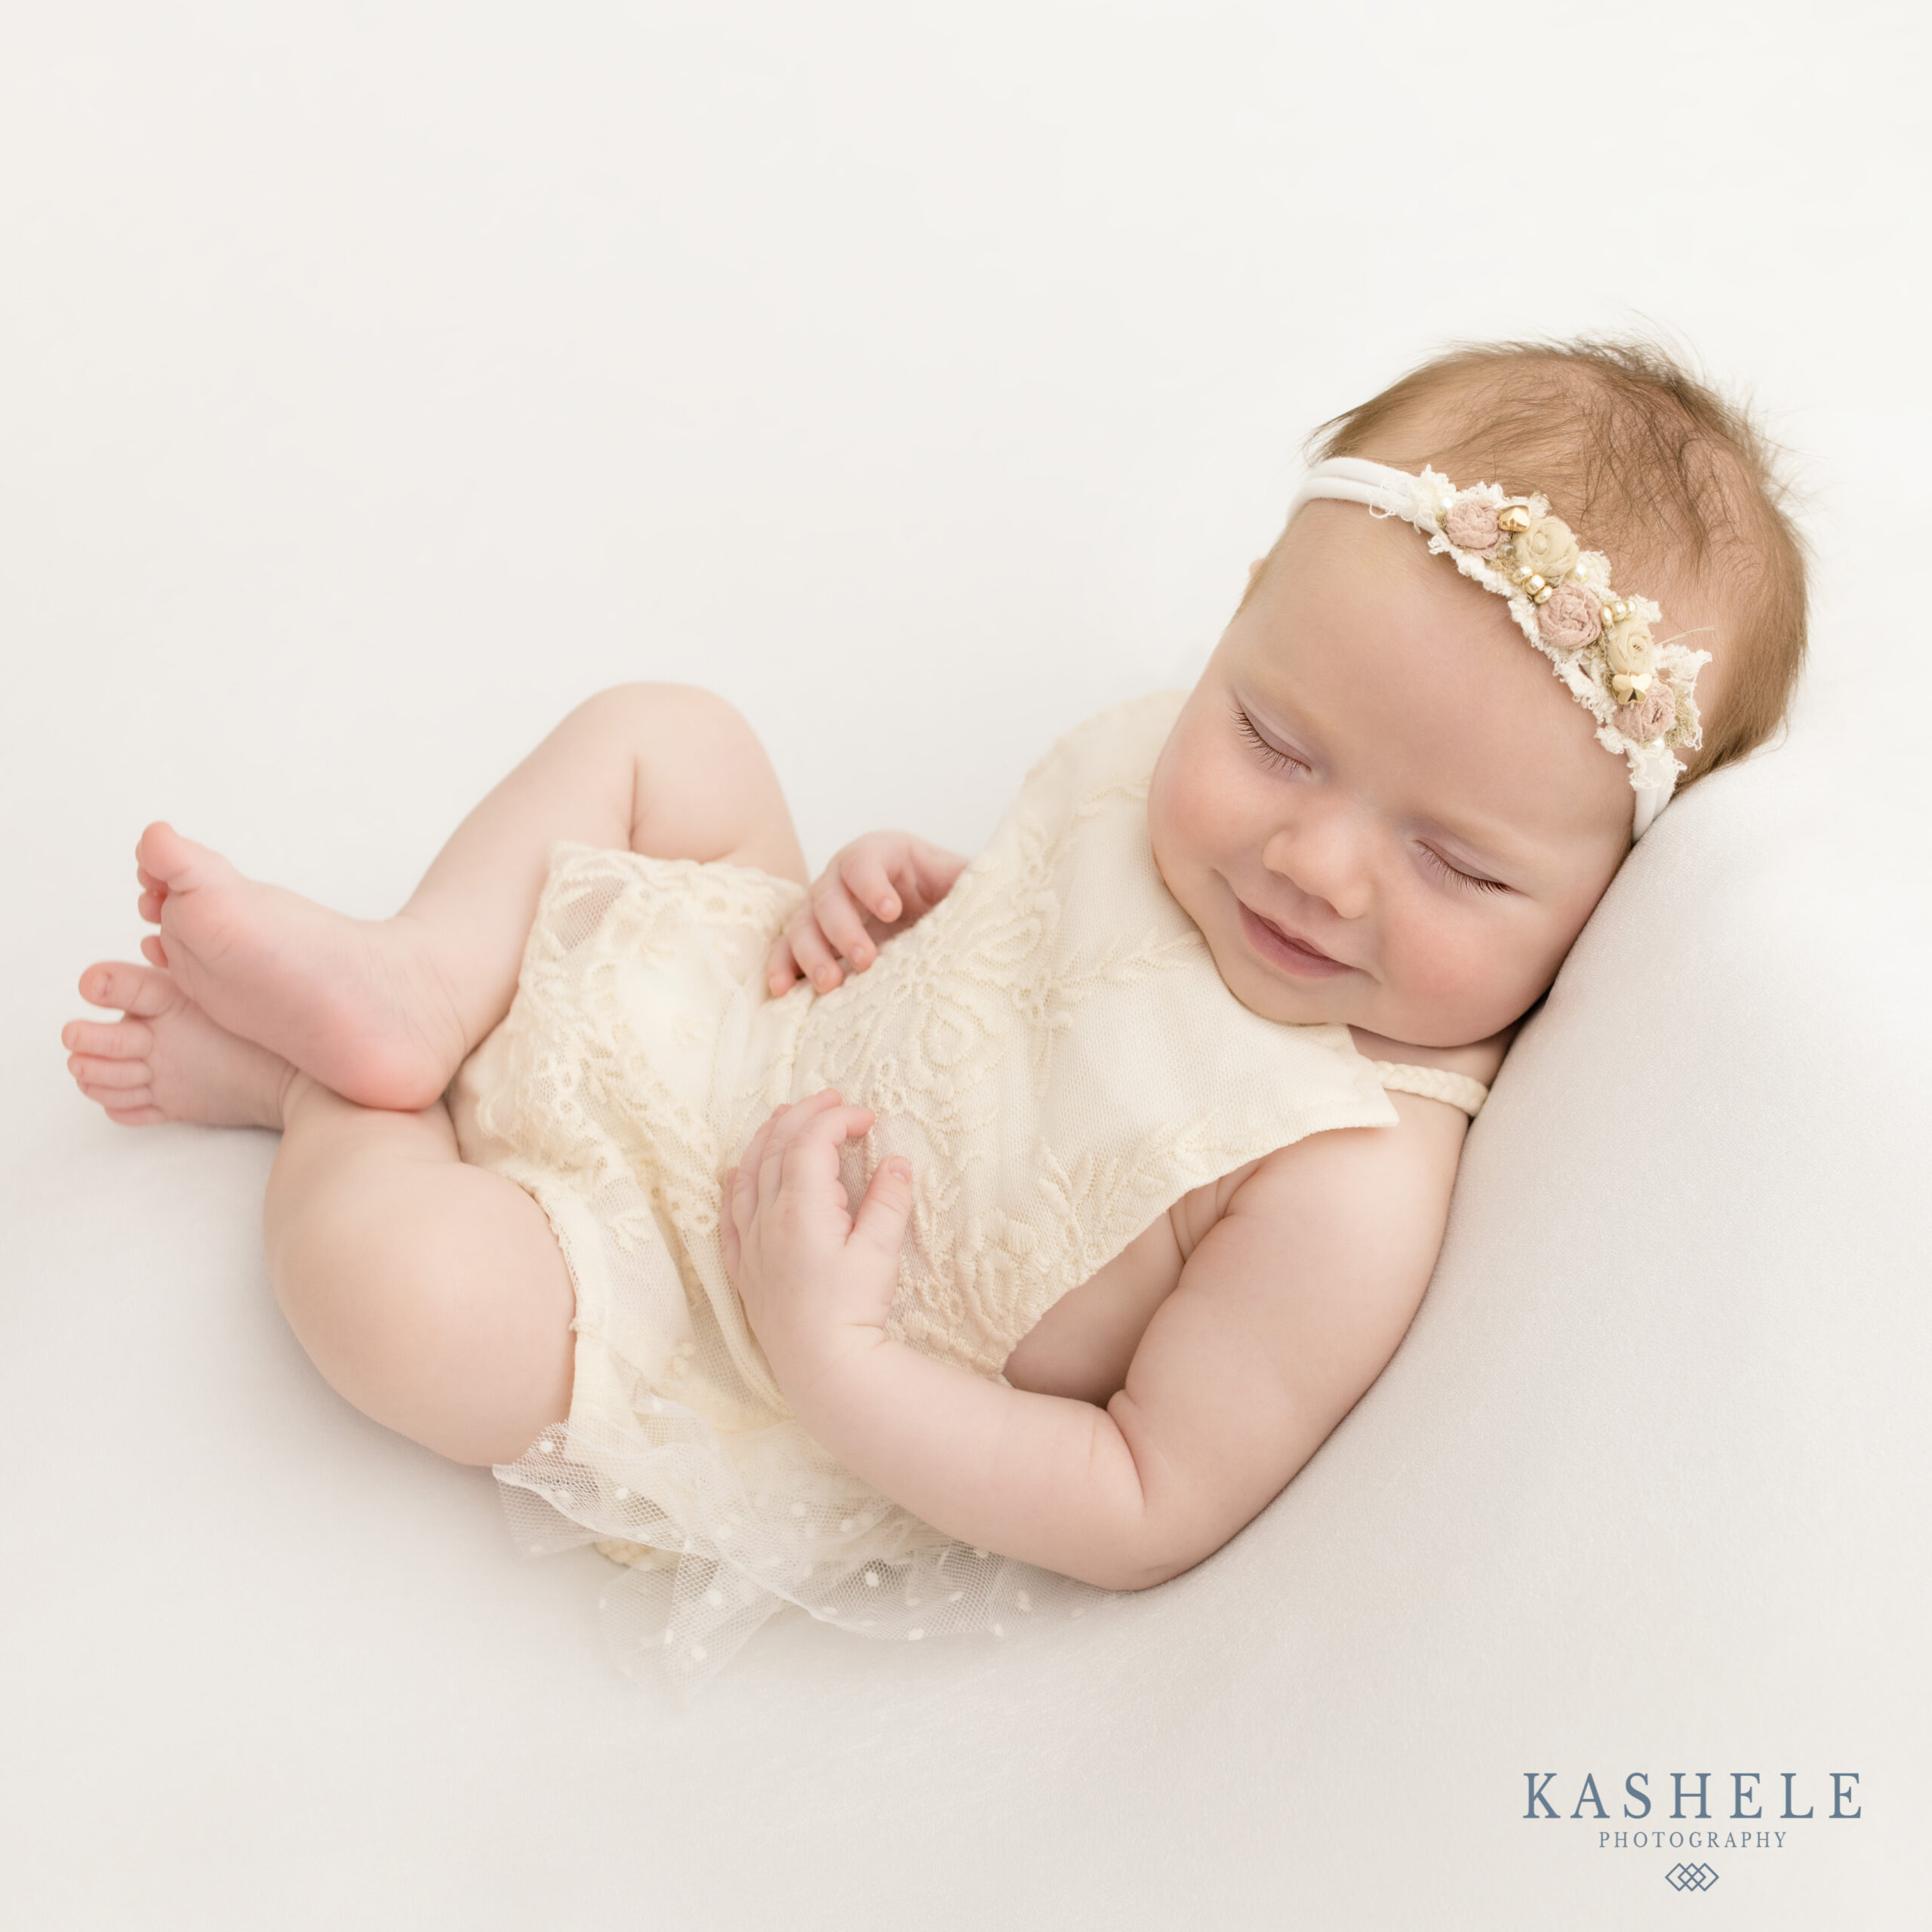 Newborn Photo Session in Home Studio | Dallas Area Family Photographer